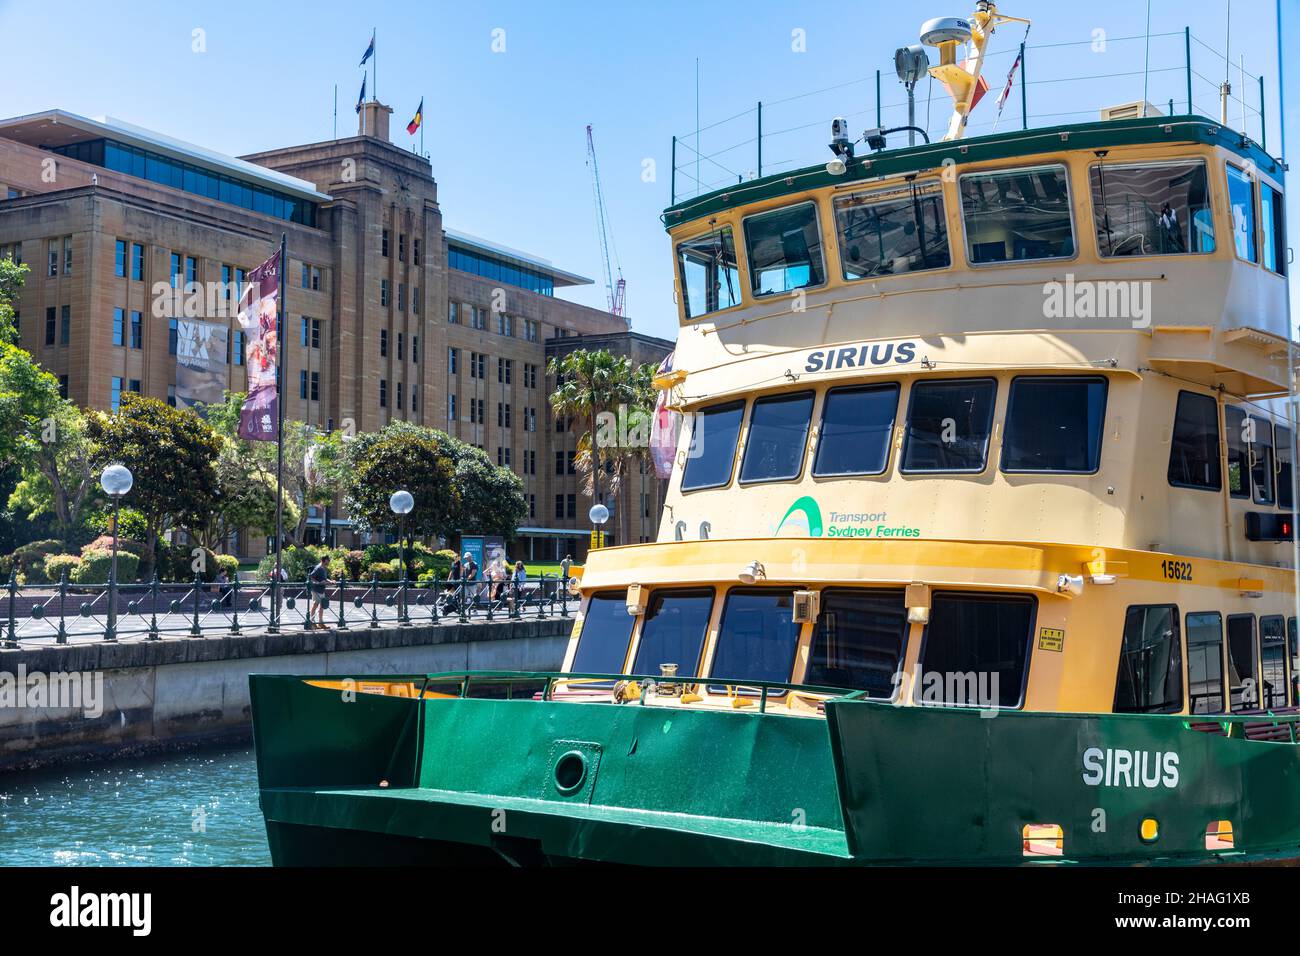 El ferry de Sydney llamado Sirius, un ferry de primera clase de flota introducido en servicio en 1984, atracado en circular Quay , MCA edificio junto a Sydney,Austral Foto de stock